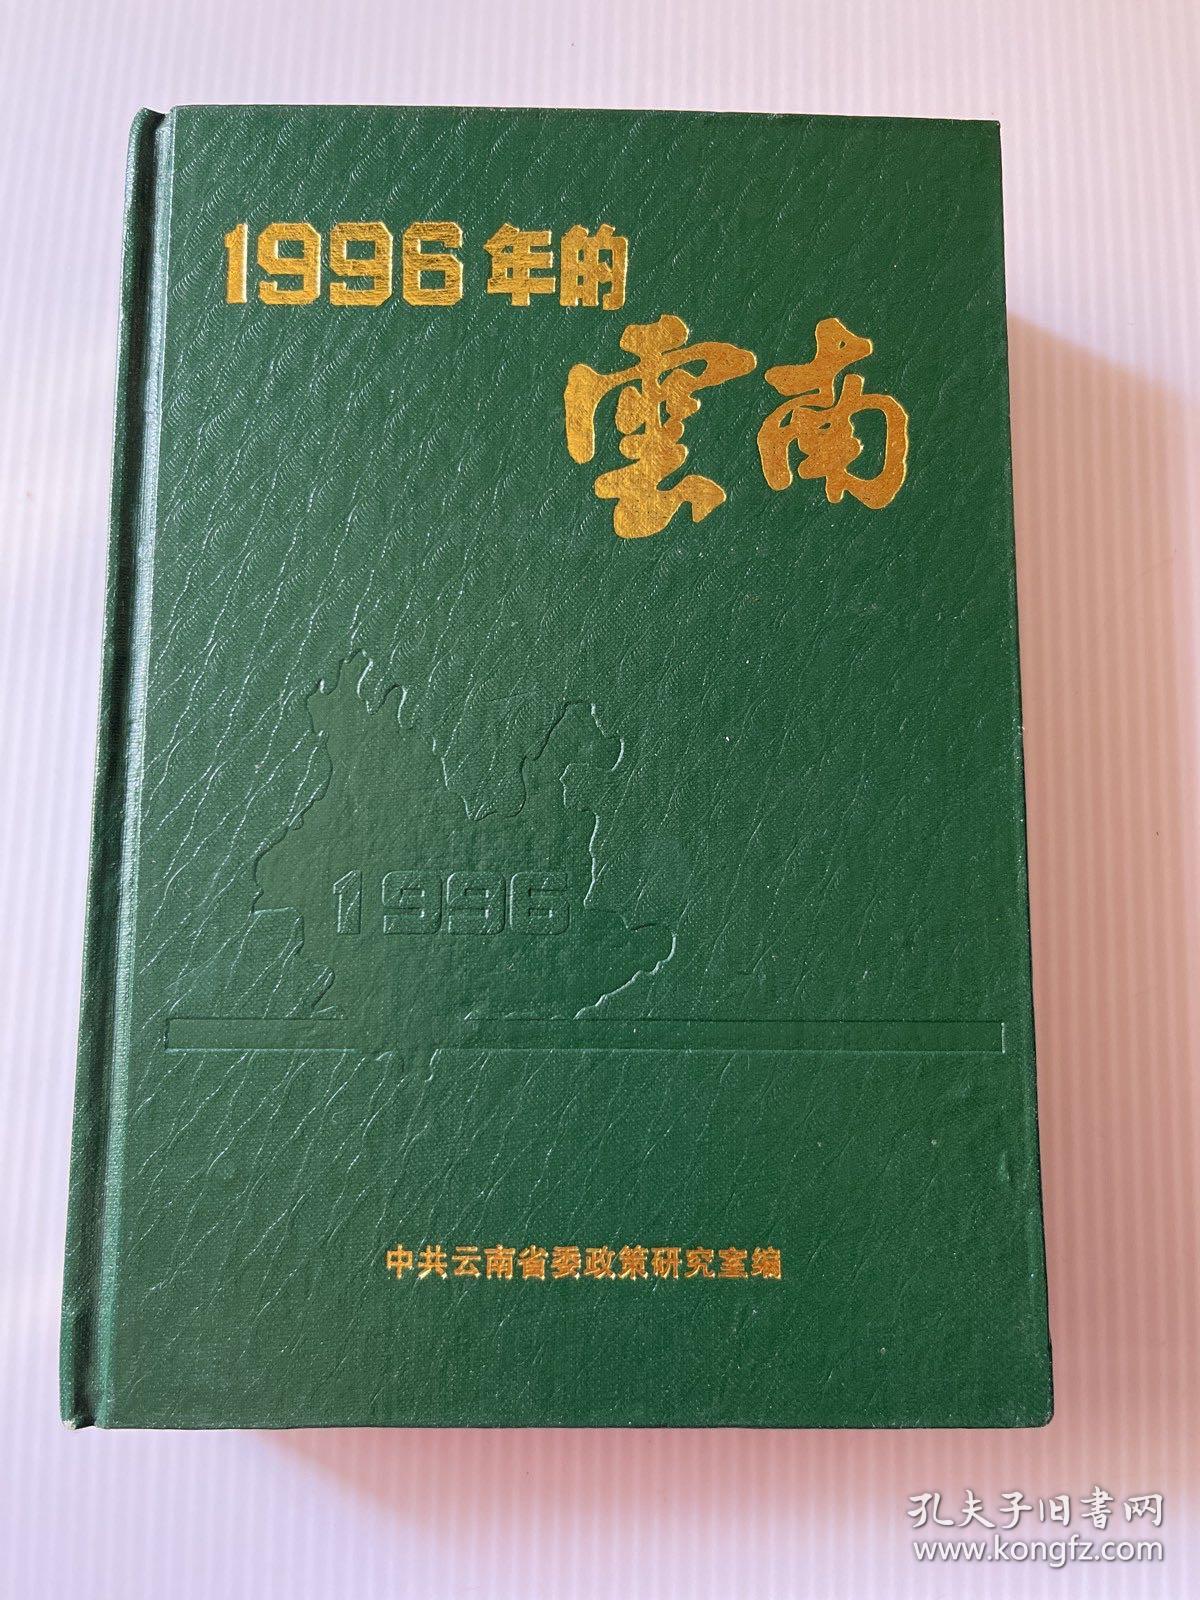 1996年的云南